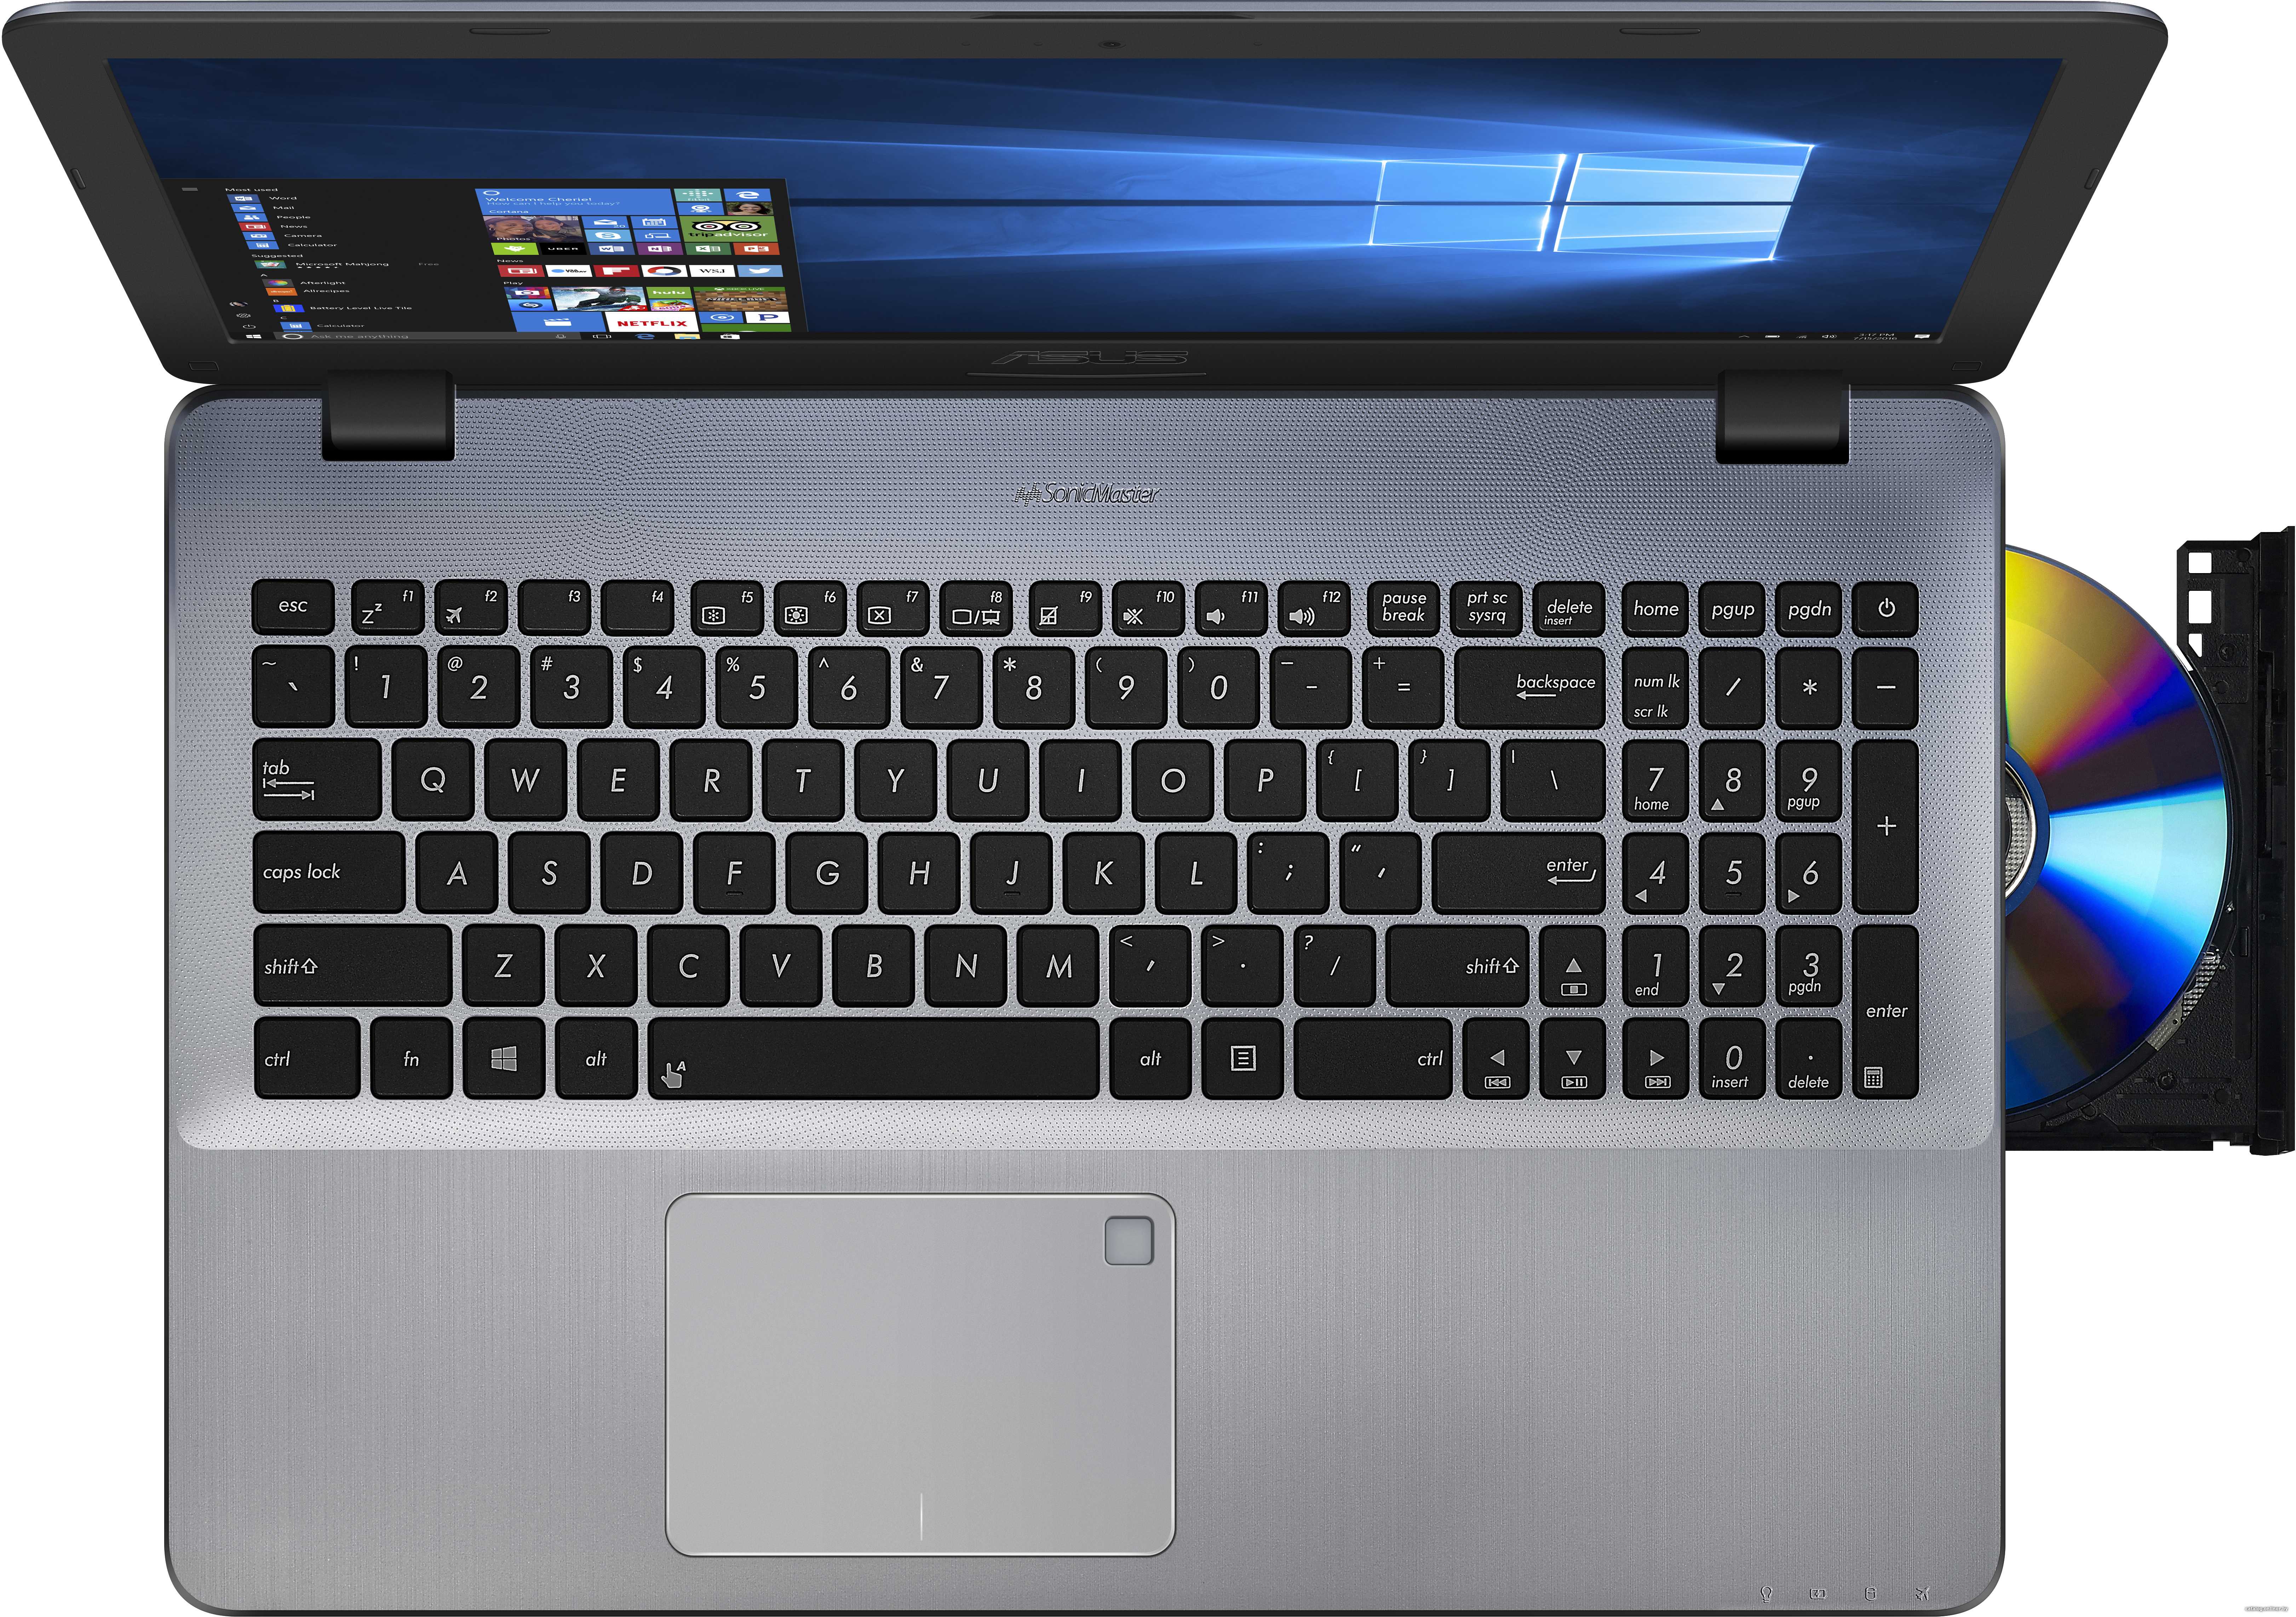 Ноутбук asus vivobook x542uq-dm274t — купить, цена и характеристики, отзывы